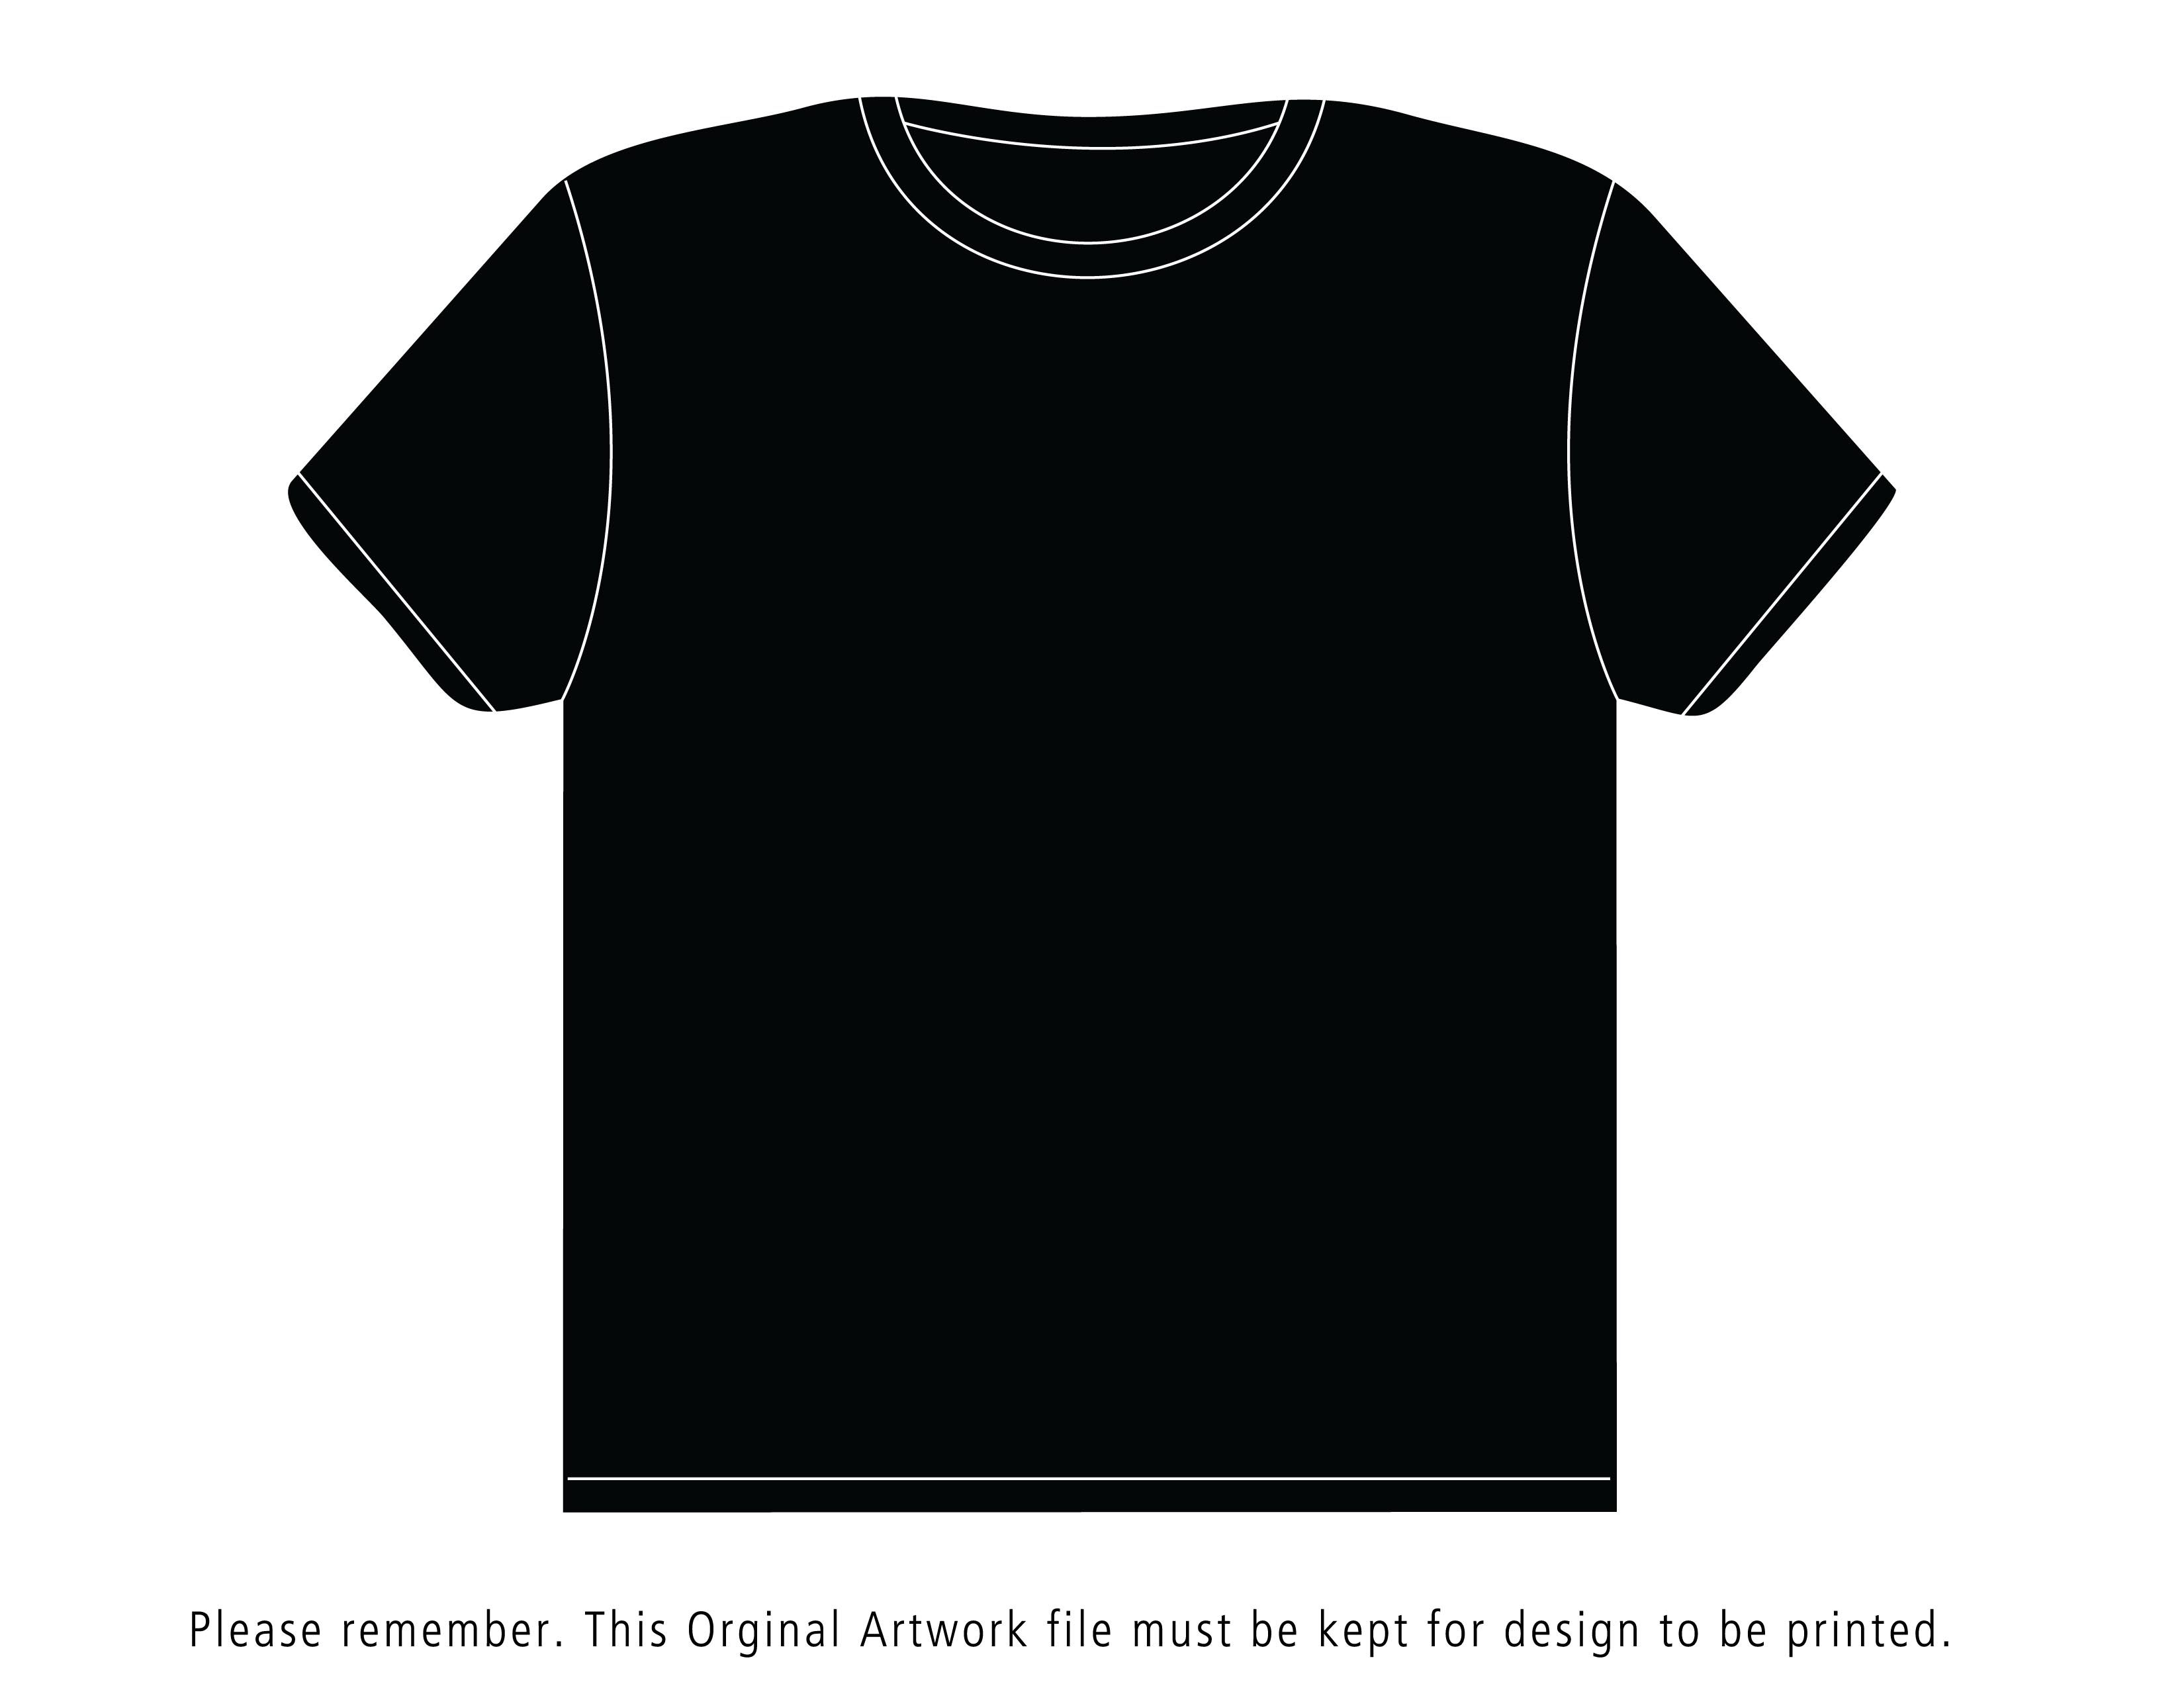 Black T-shirt Template Psd